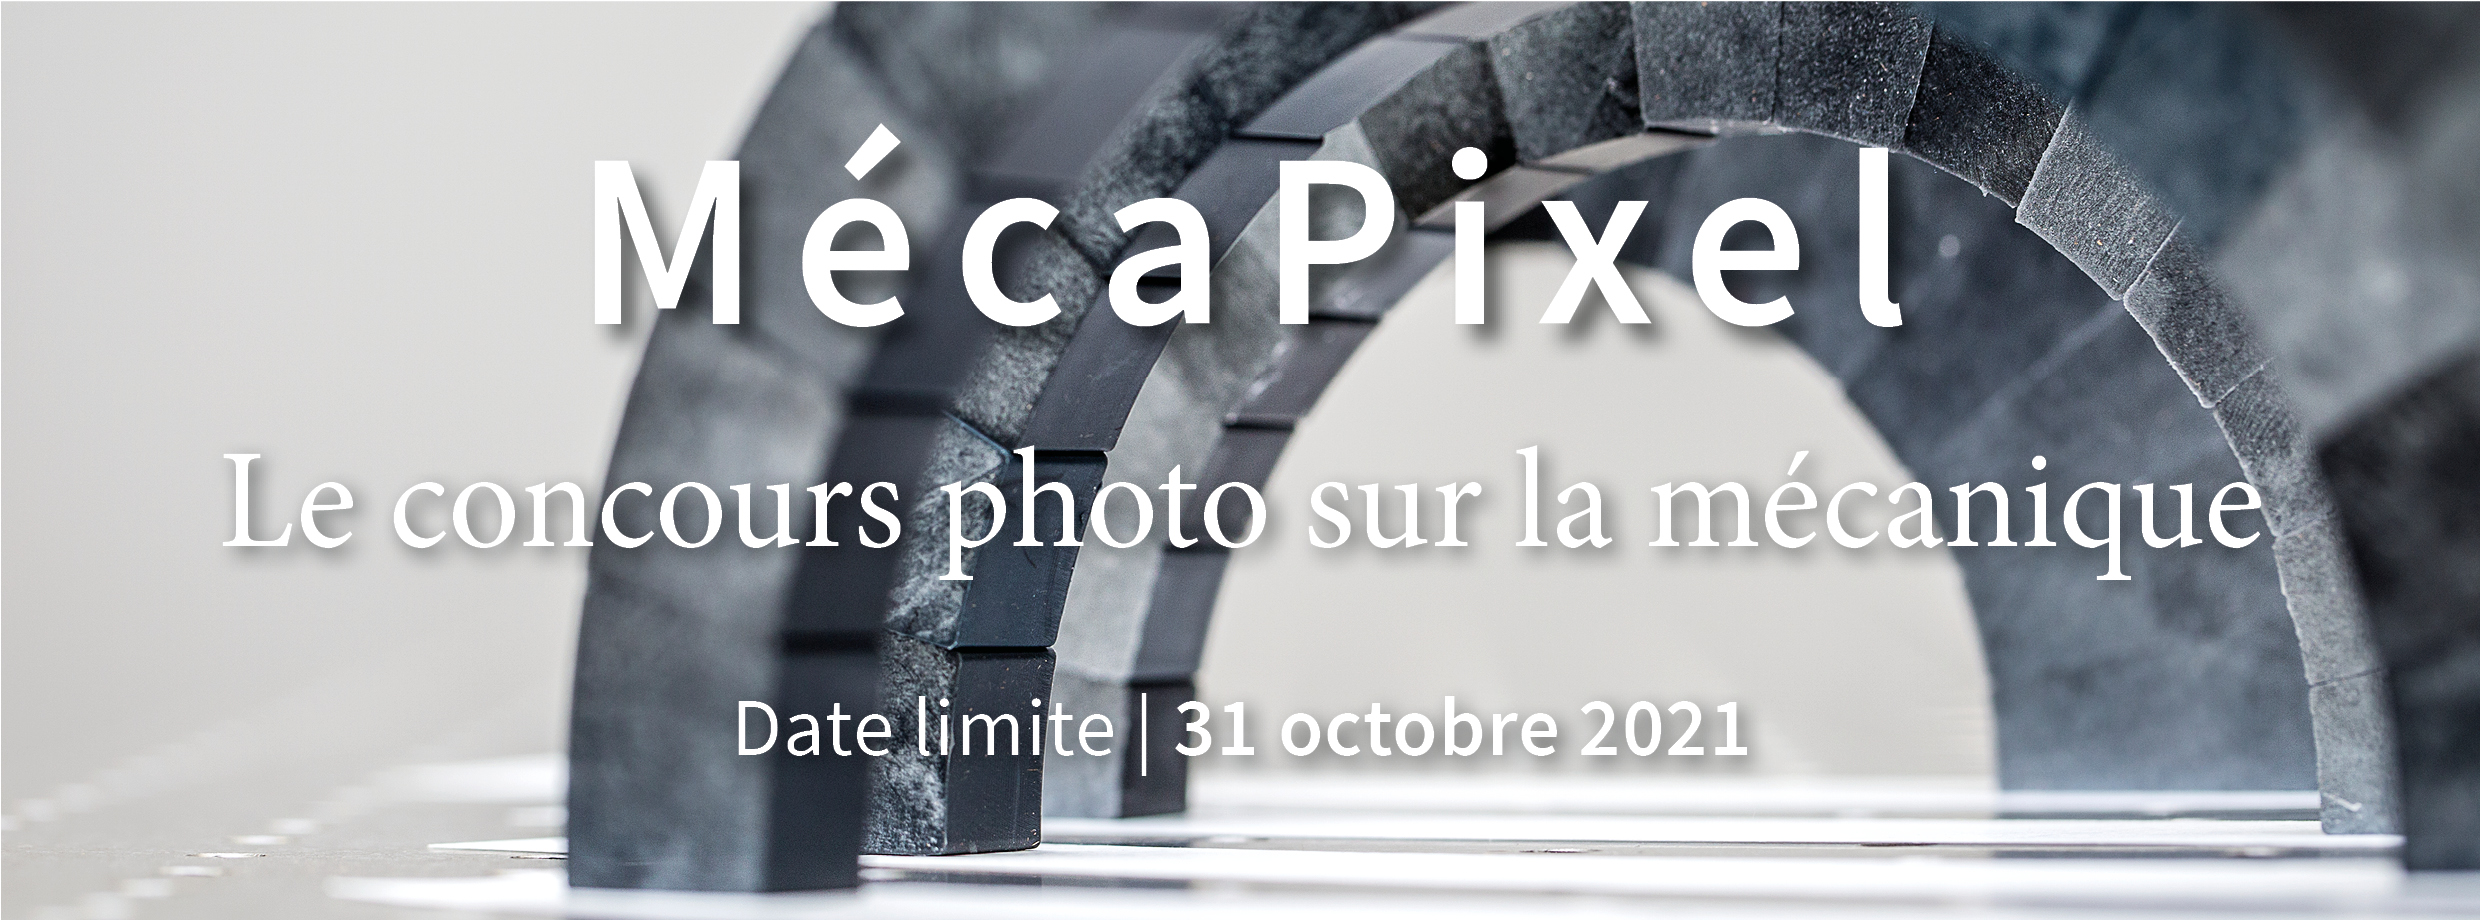 MecaPixel, jusqu'au 31 octobre 2021